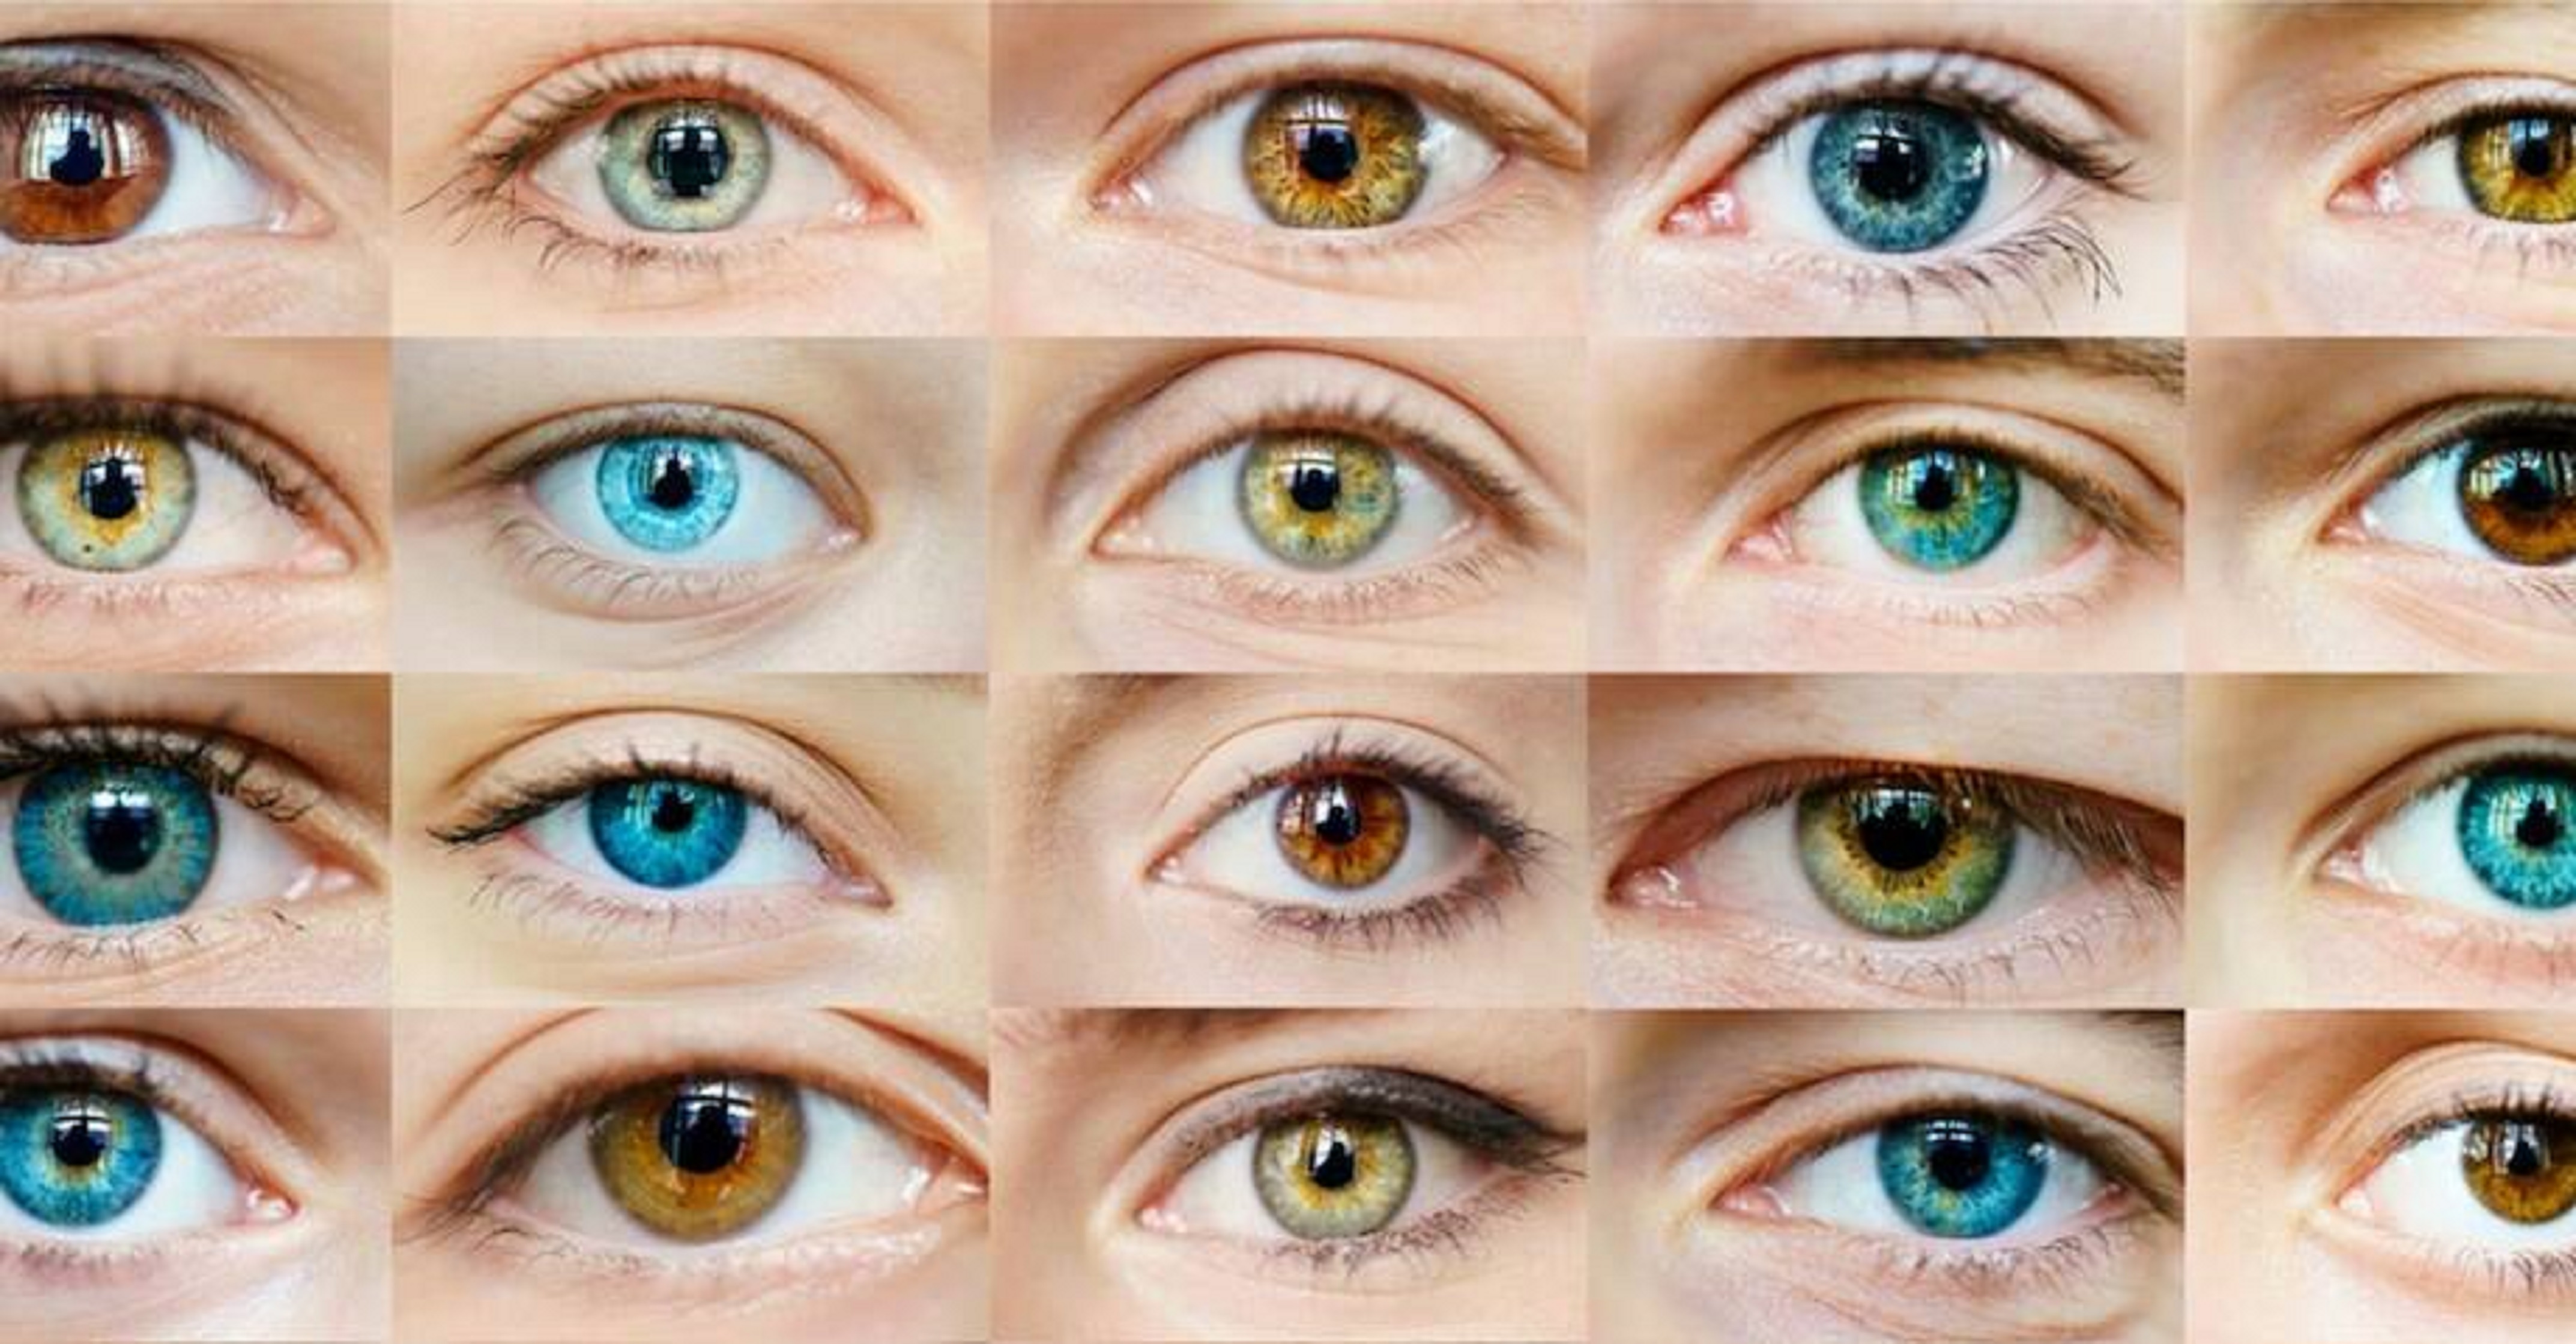 Який найрідкісніший колір очей у людини?